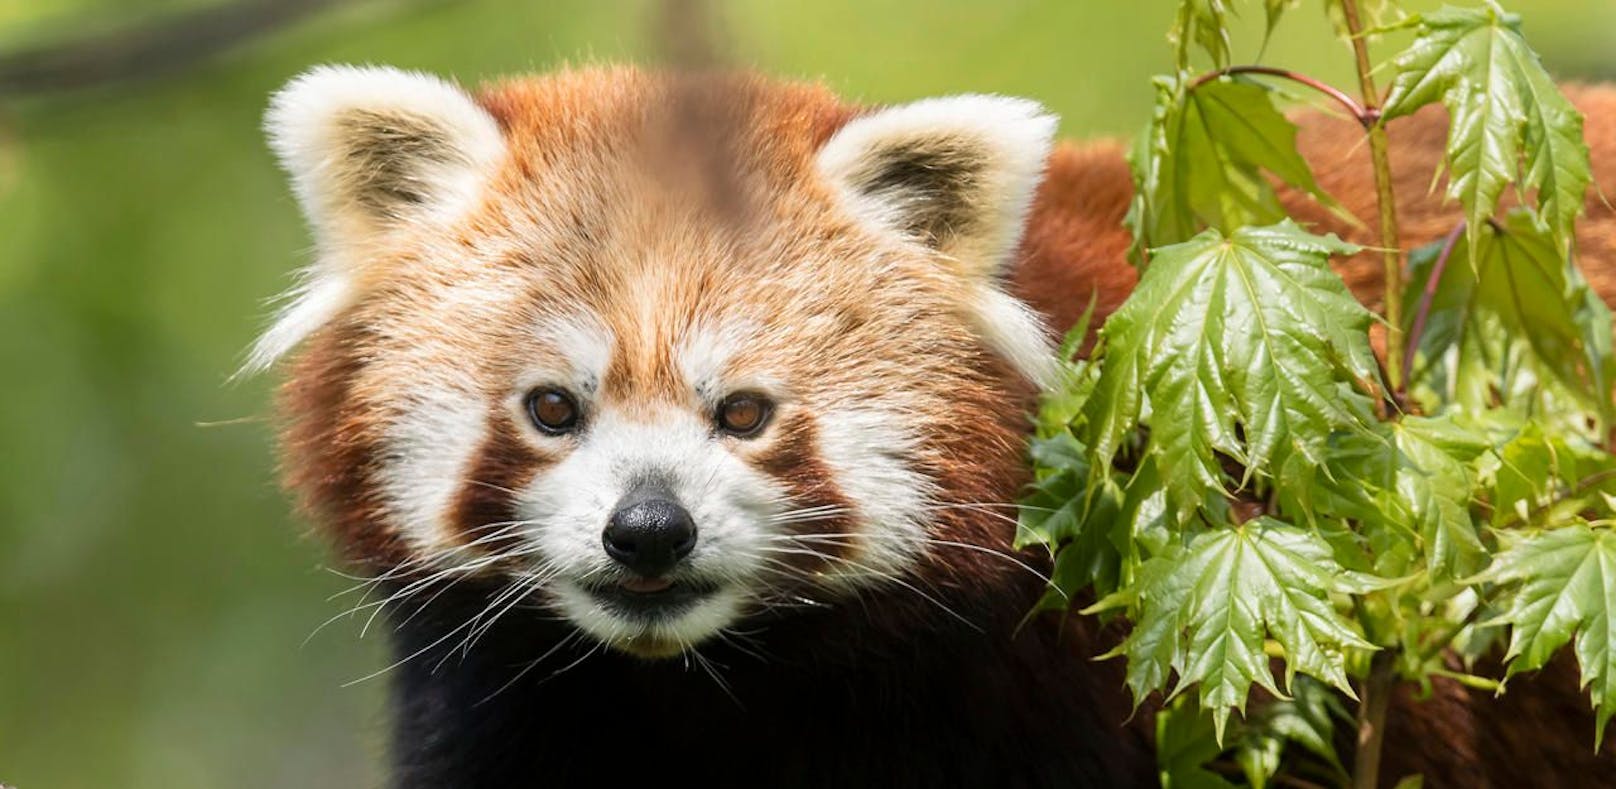 Am Wochenende gibt's Sonderfütterungen der Roten Pandas im Zoo Schönbrunn.